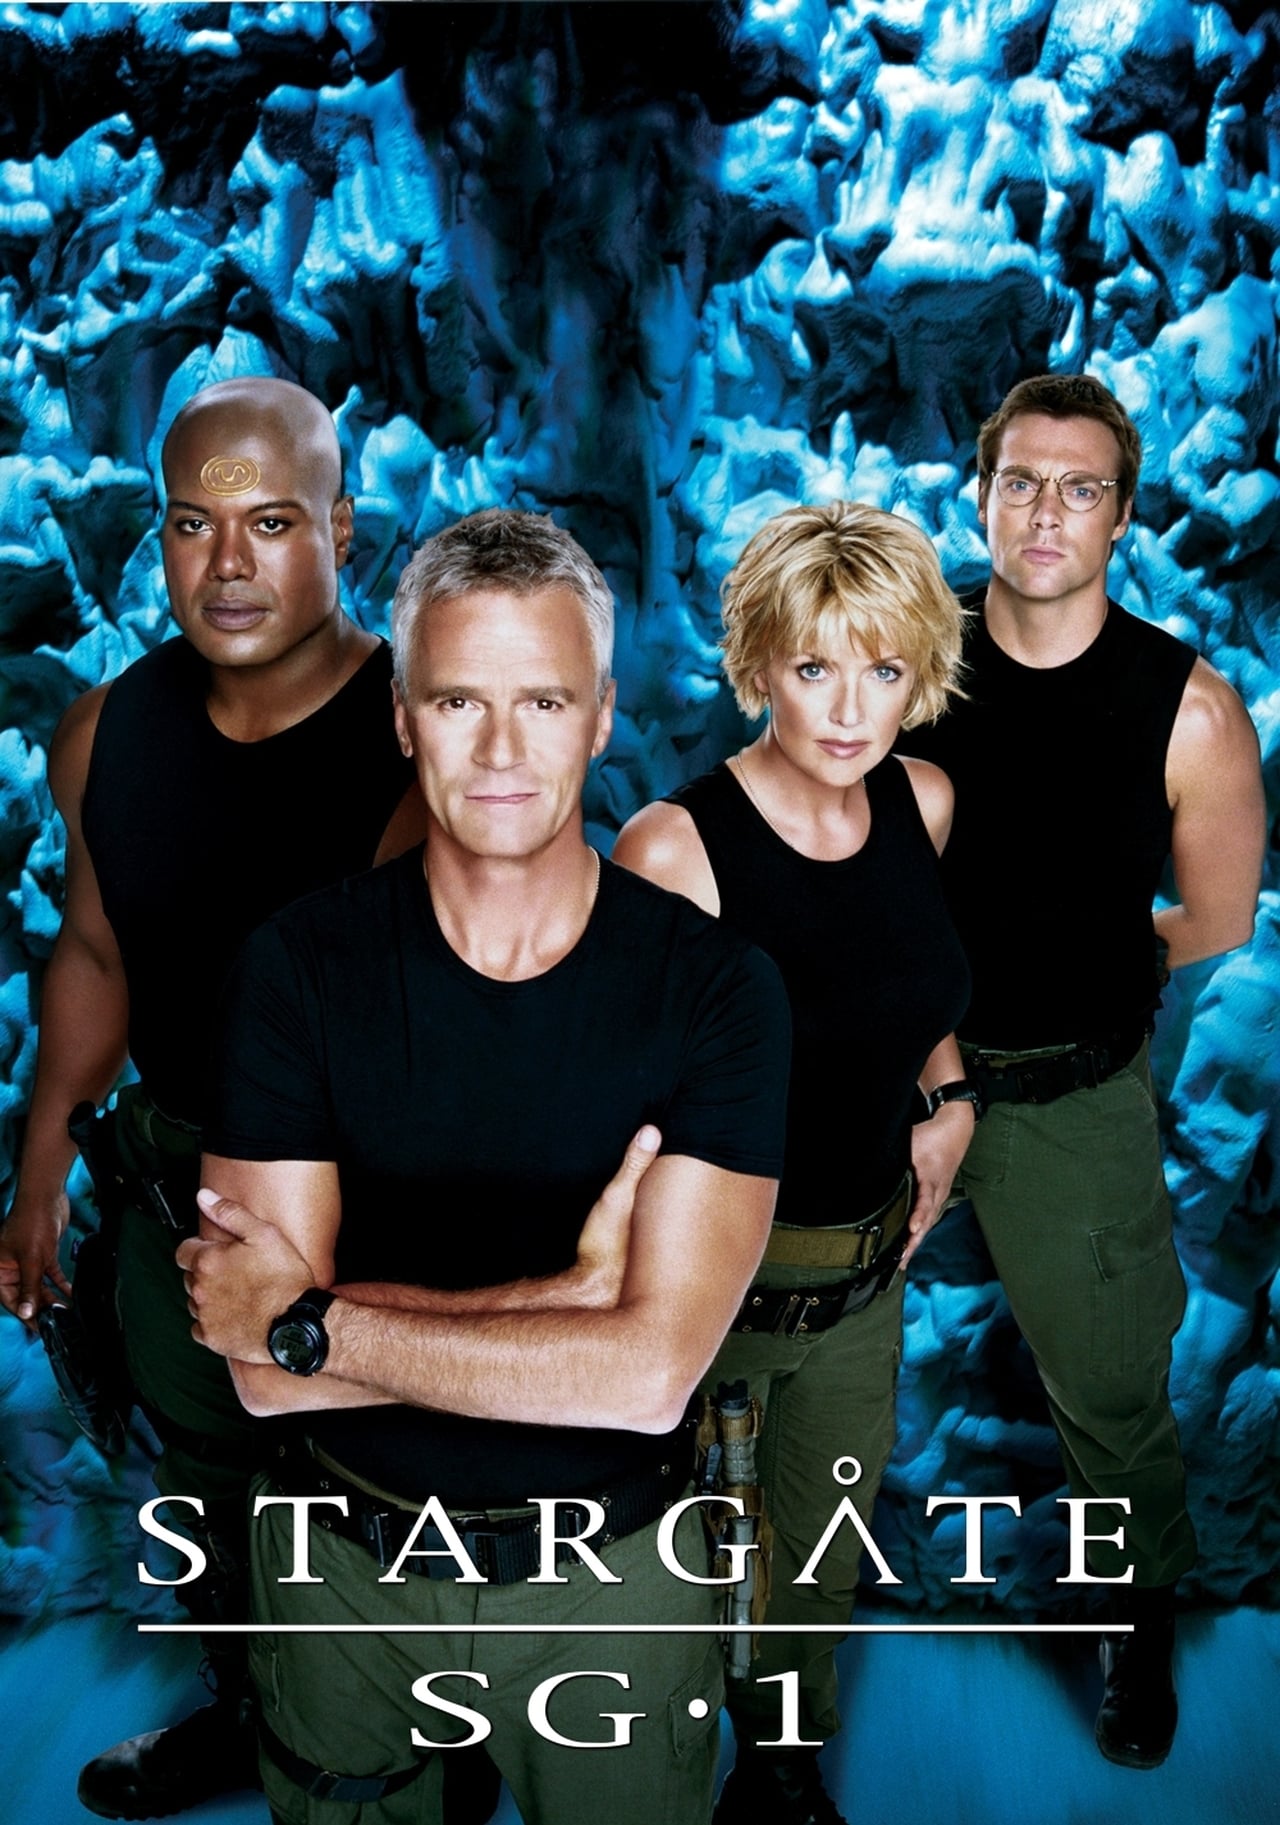 Stargate sg 1. Звёздные врата зв-1. Звездные врата SG-1» 1997.